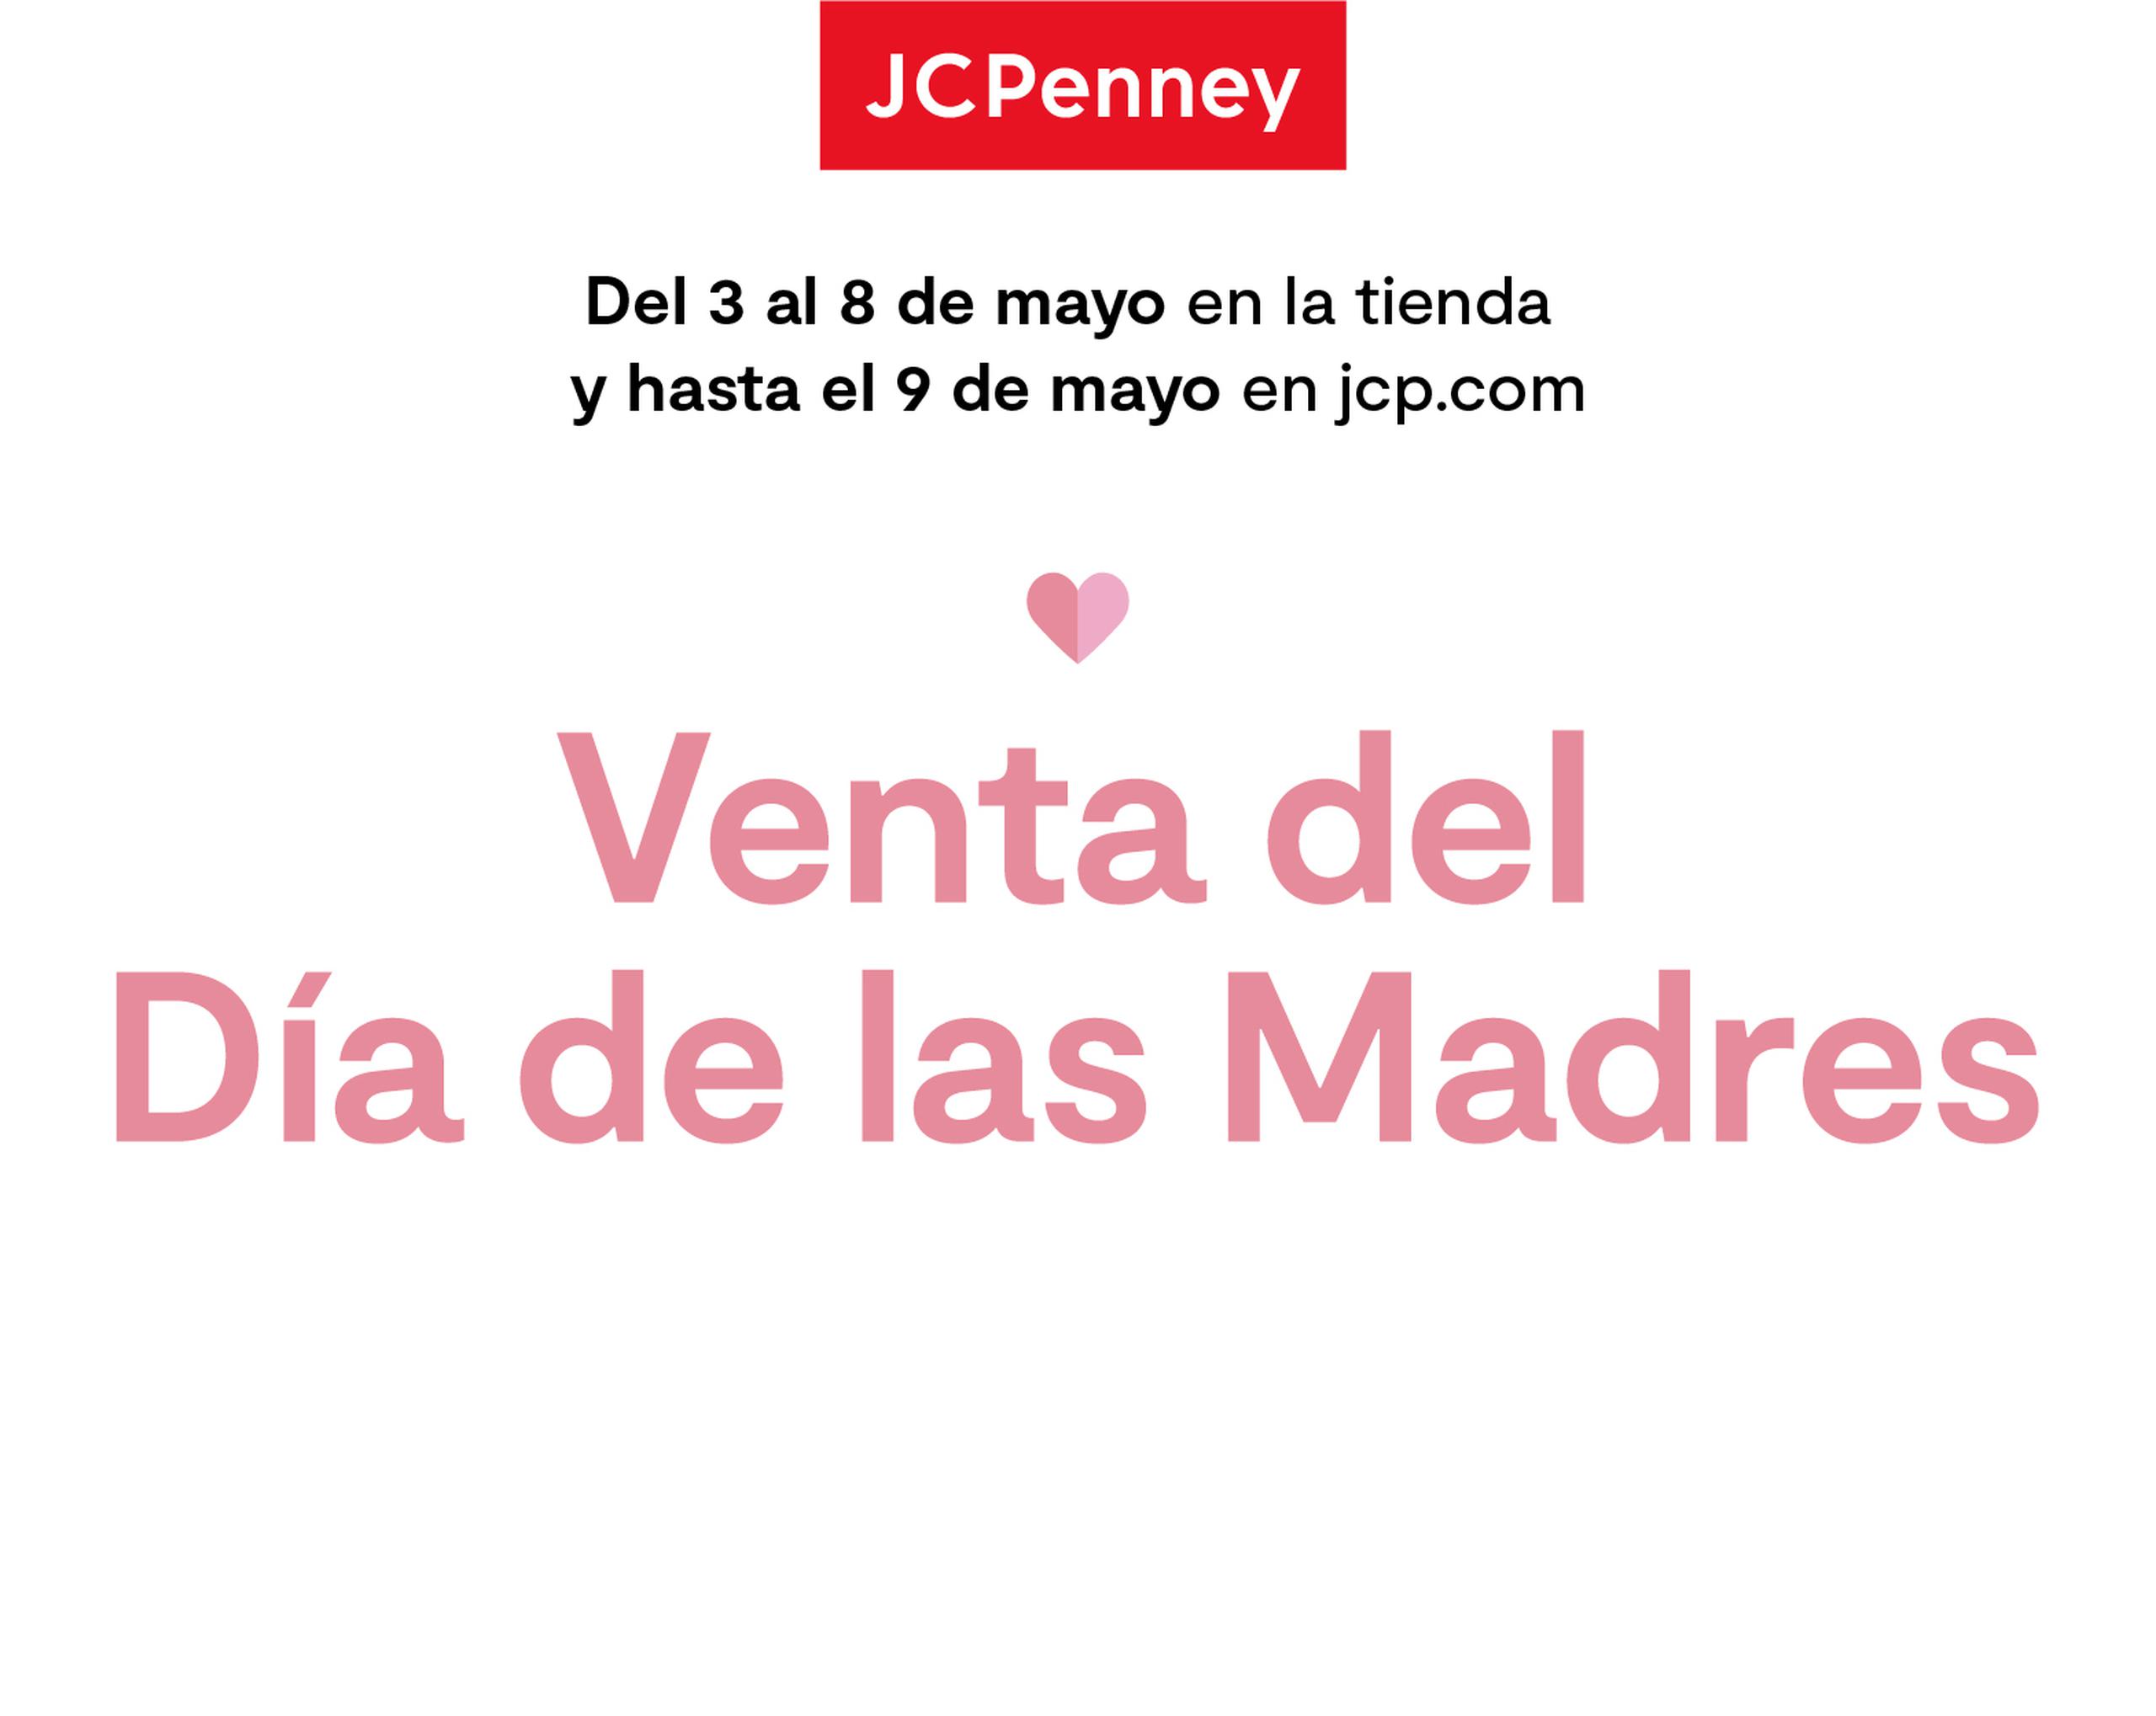 Busca las ofertas para las compras de regalos para el Día de las Madres de JCPenney.